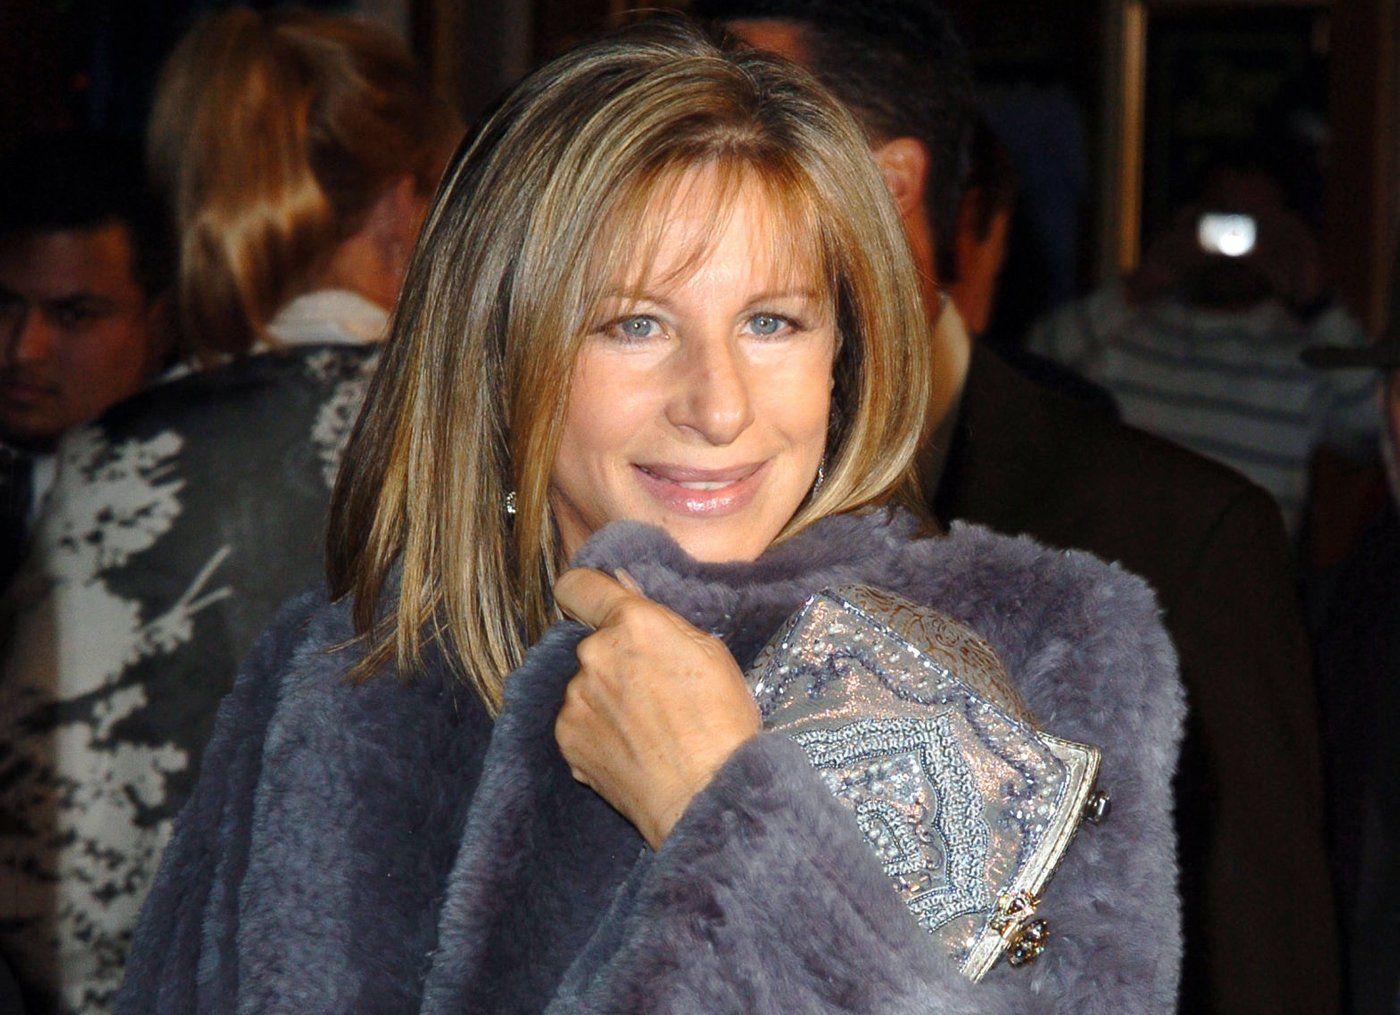 Streisand at 2004 Meet the Fockers movie premiere.